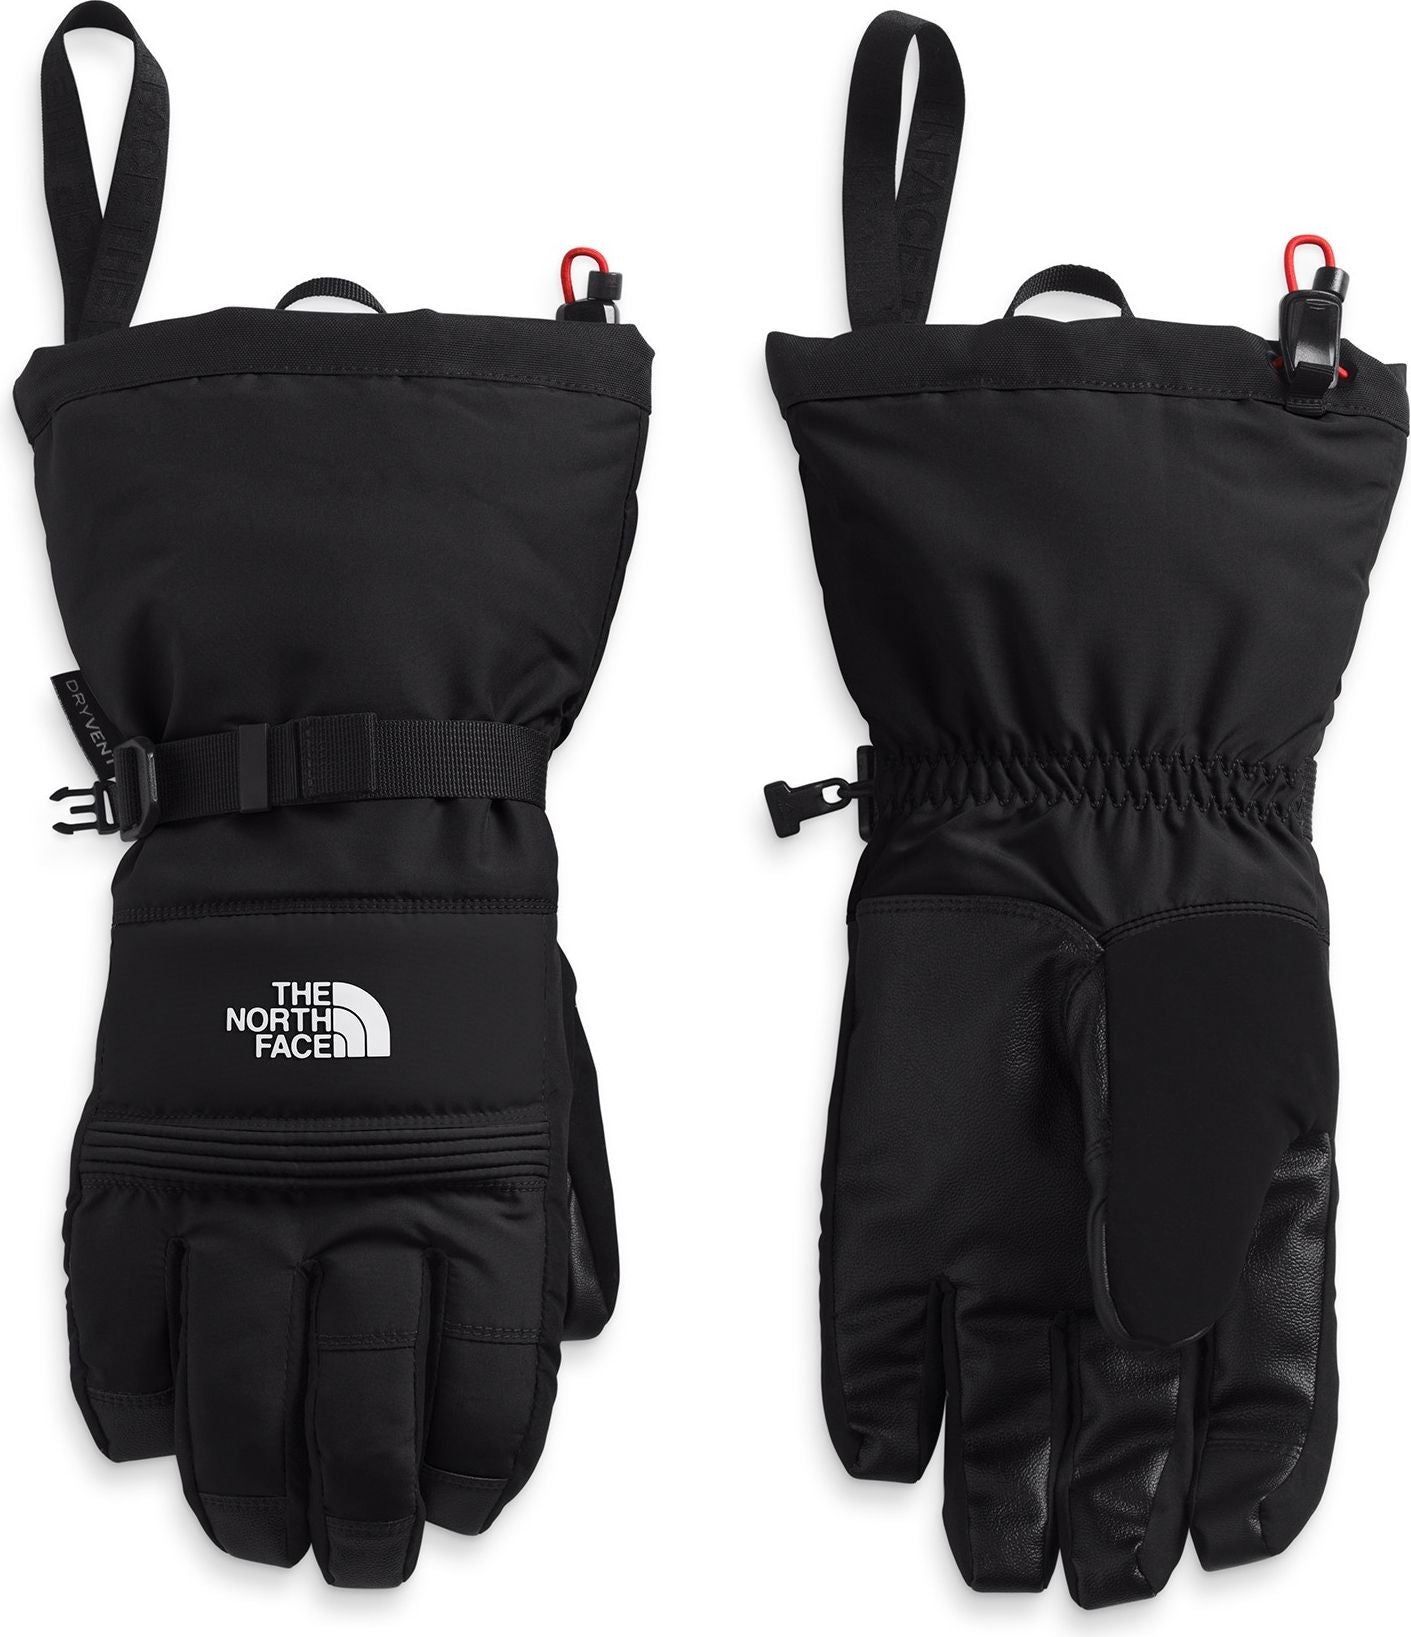 The North Face Accessories Men's Montana Ski Glove Tnf Black